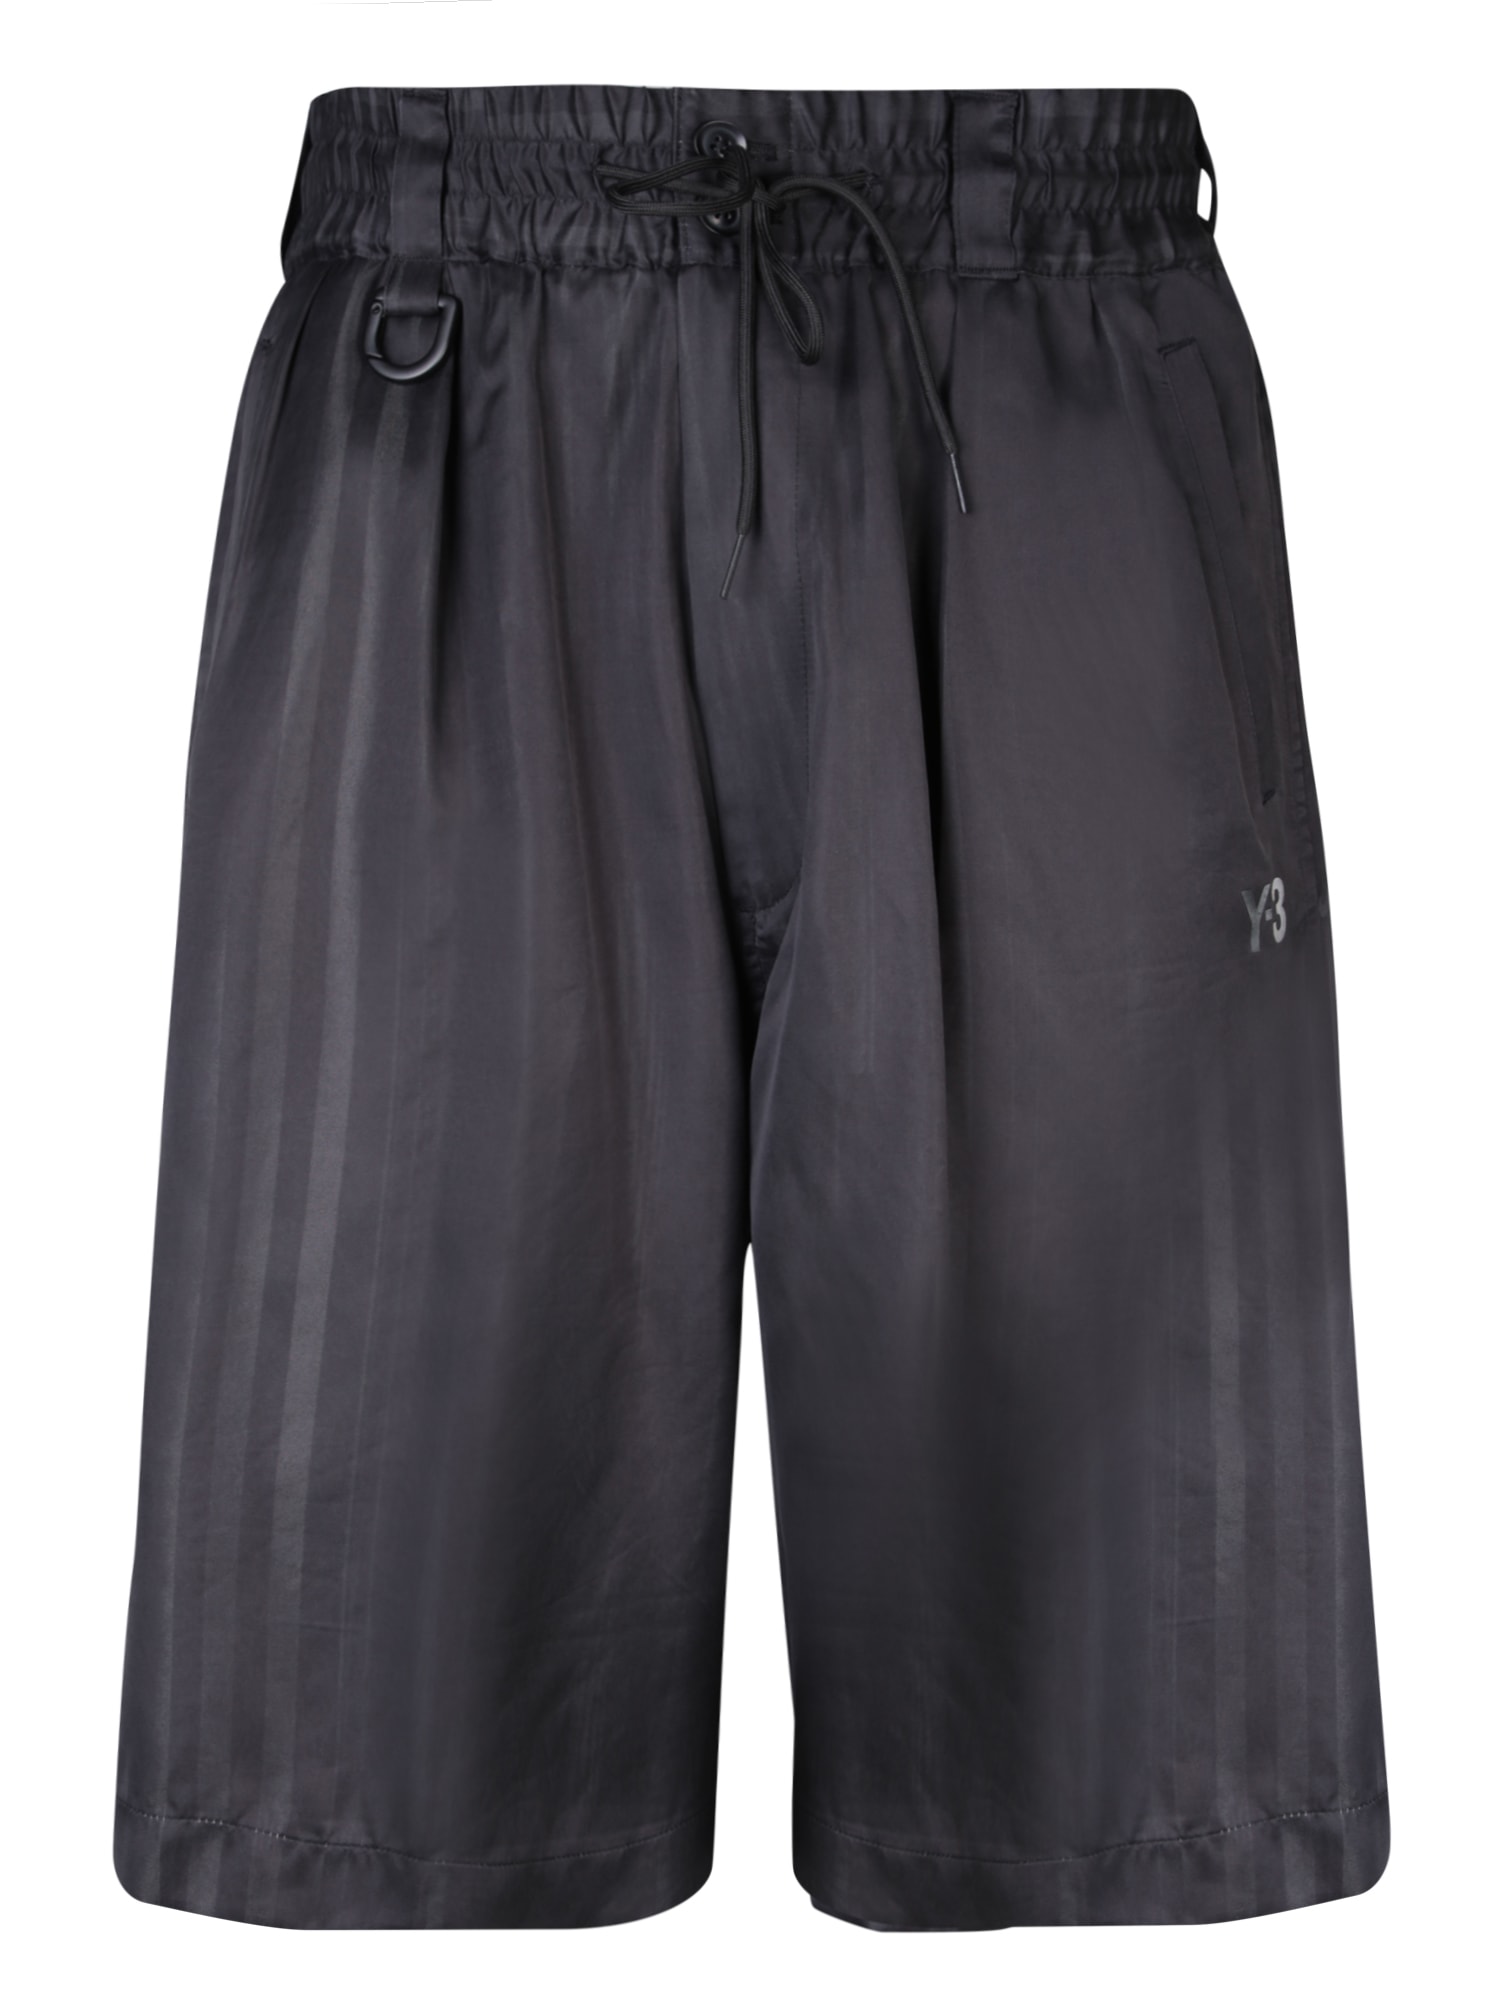 Adidas Y-3 3s Black Bermuda Shorts